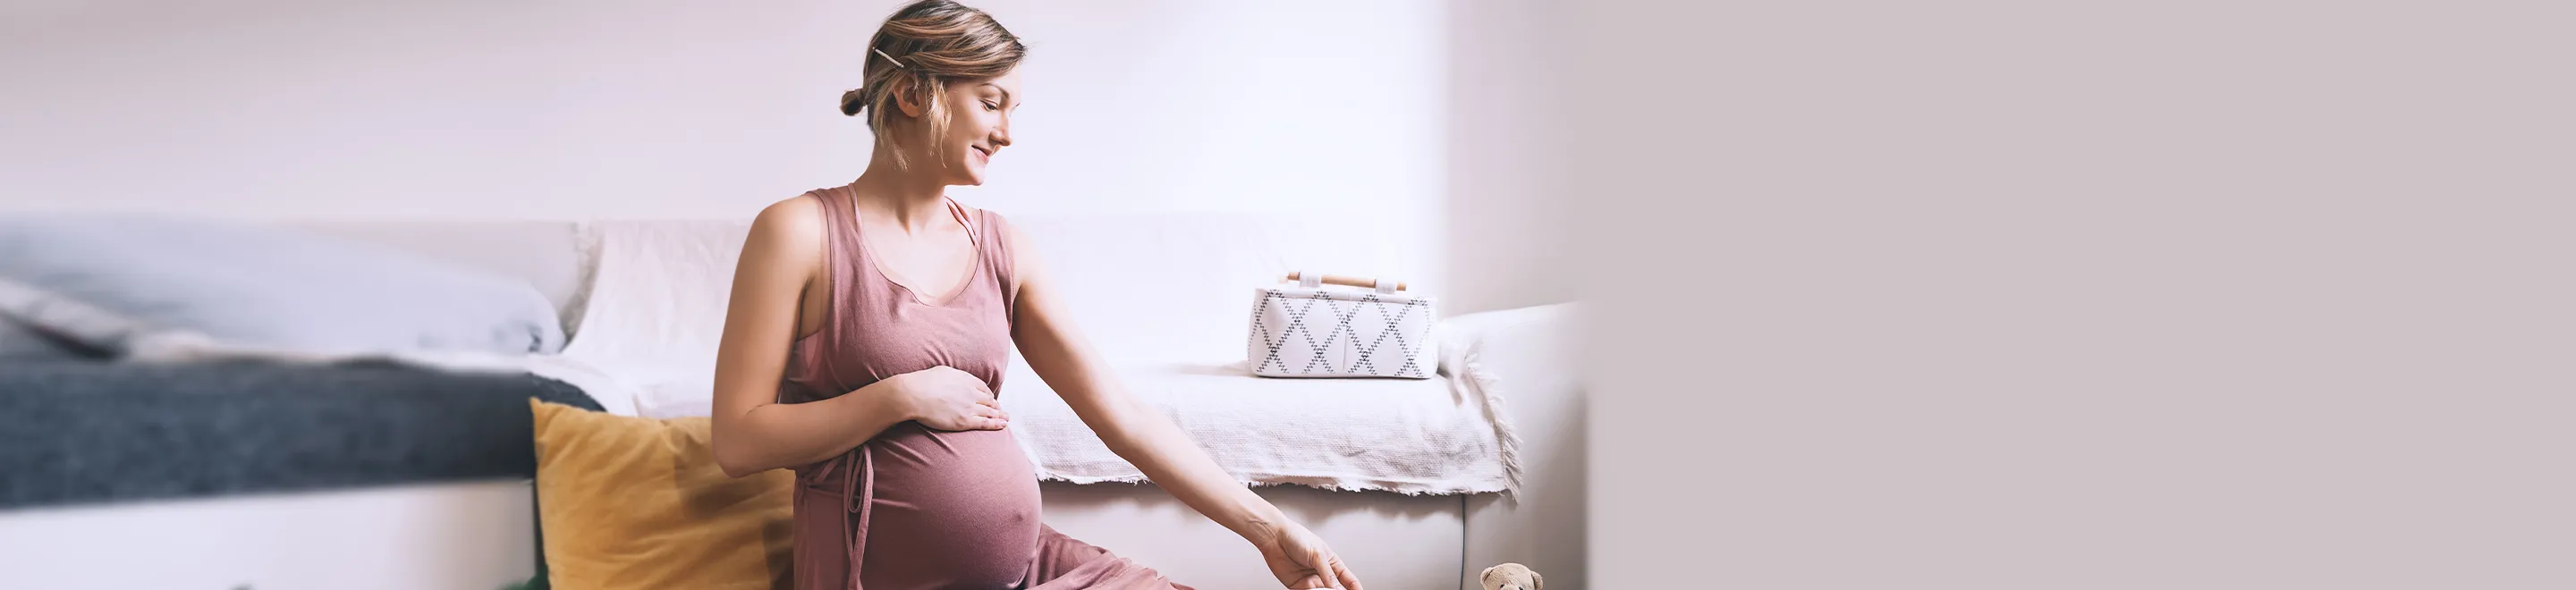 Eine schwangere Frau sitzt auf dem Boden und sortiert Babysachen.